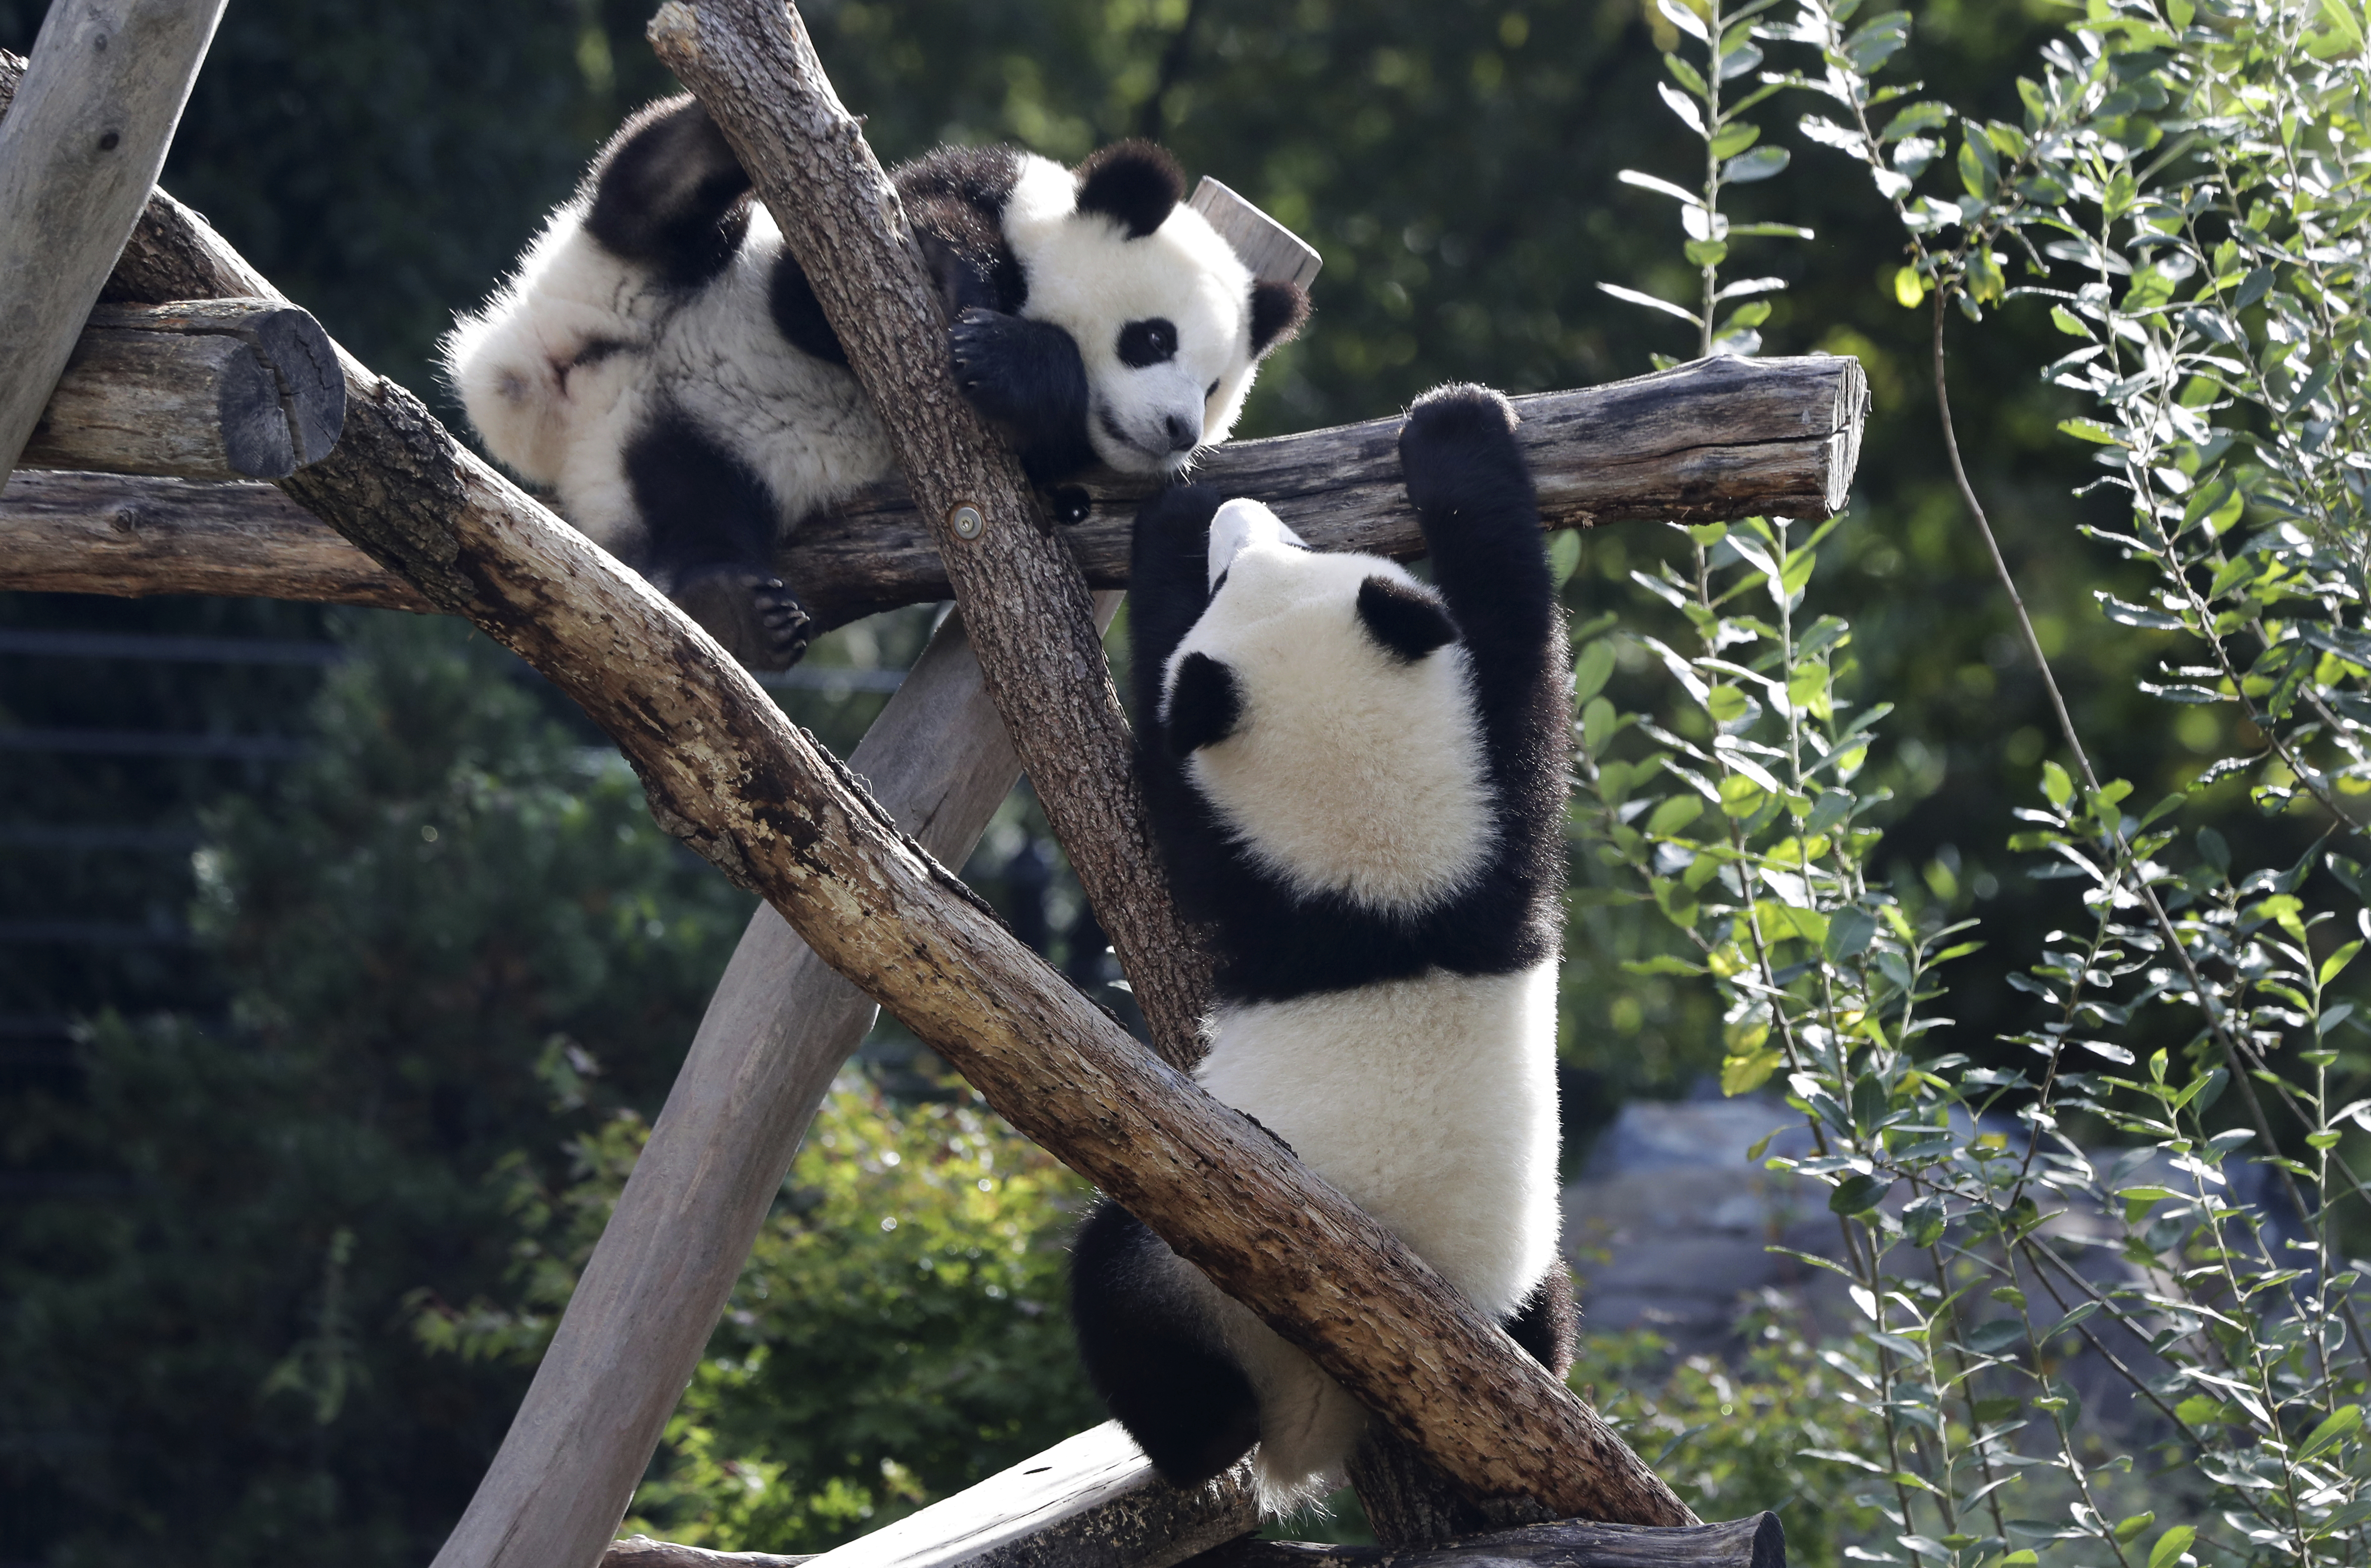 Gaint panda - Stuffed Animals & Plush